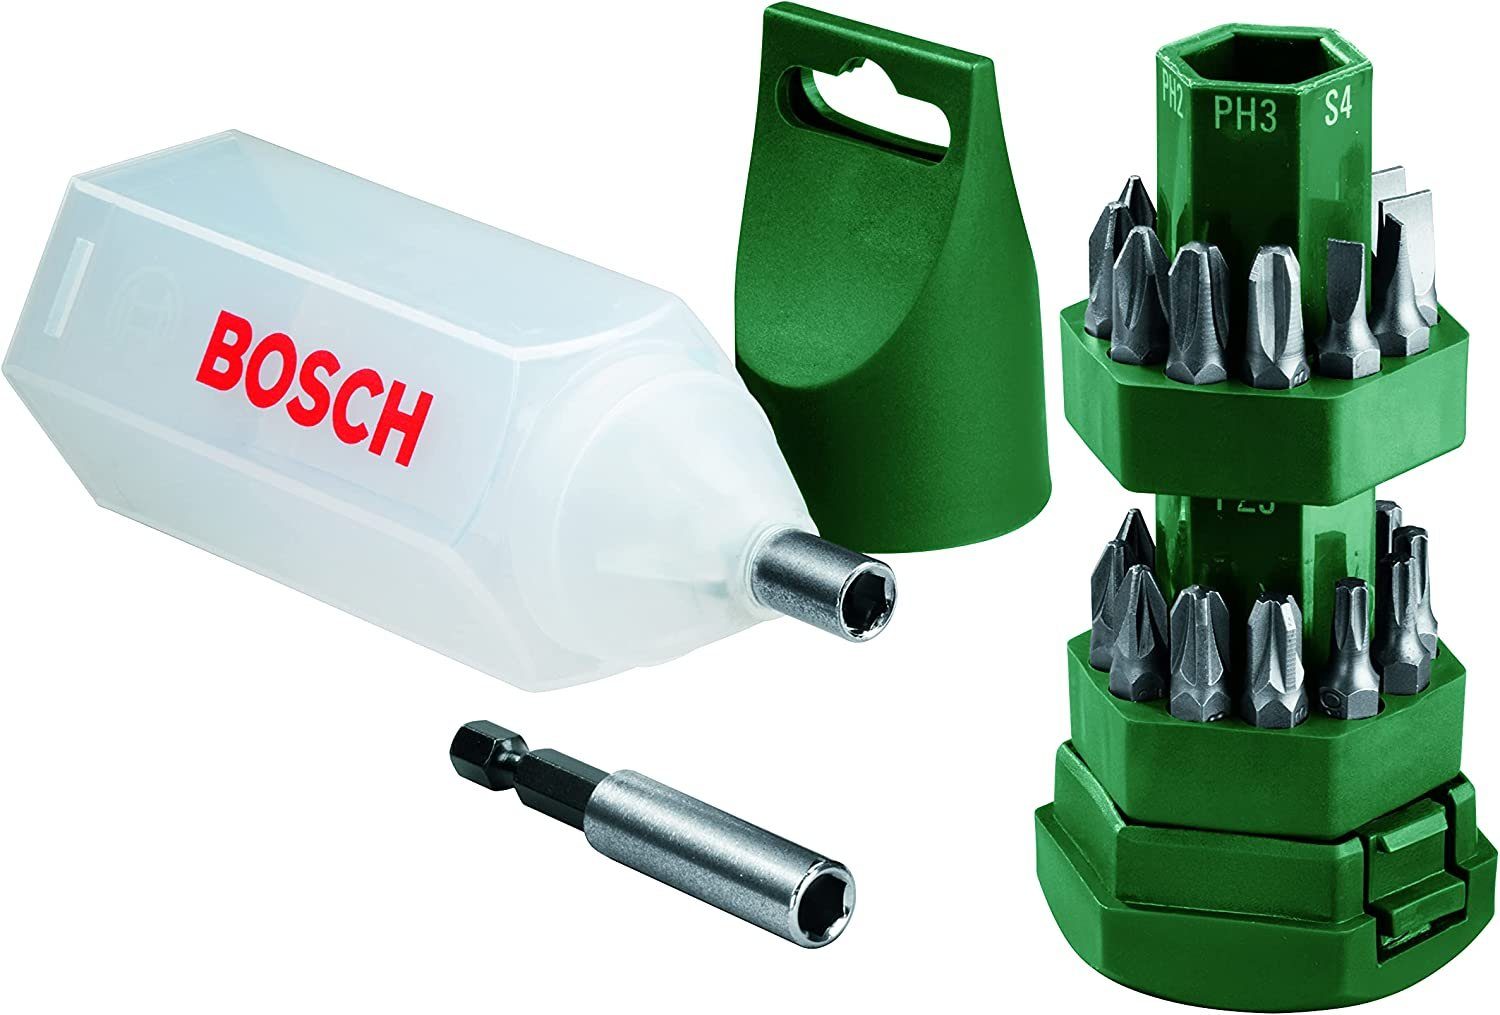 25tlg. Bitset Bohrer- BOSCH Bosch Big-Bit Schrauberbit-Set und